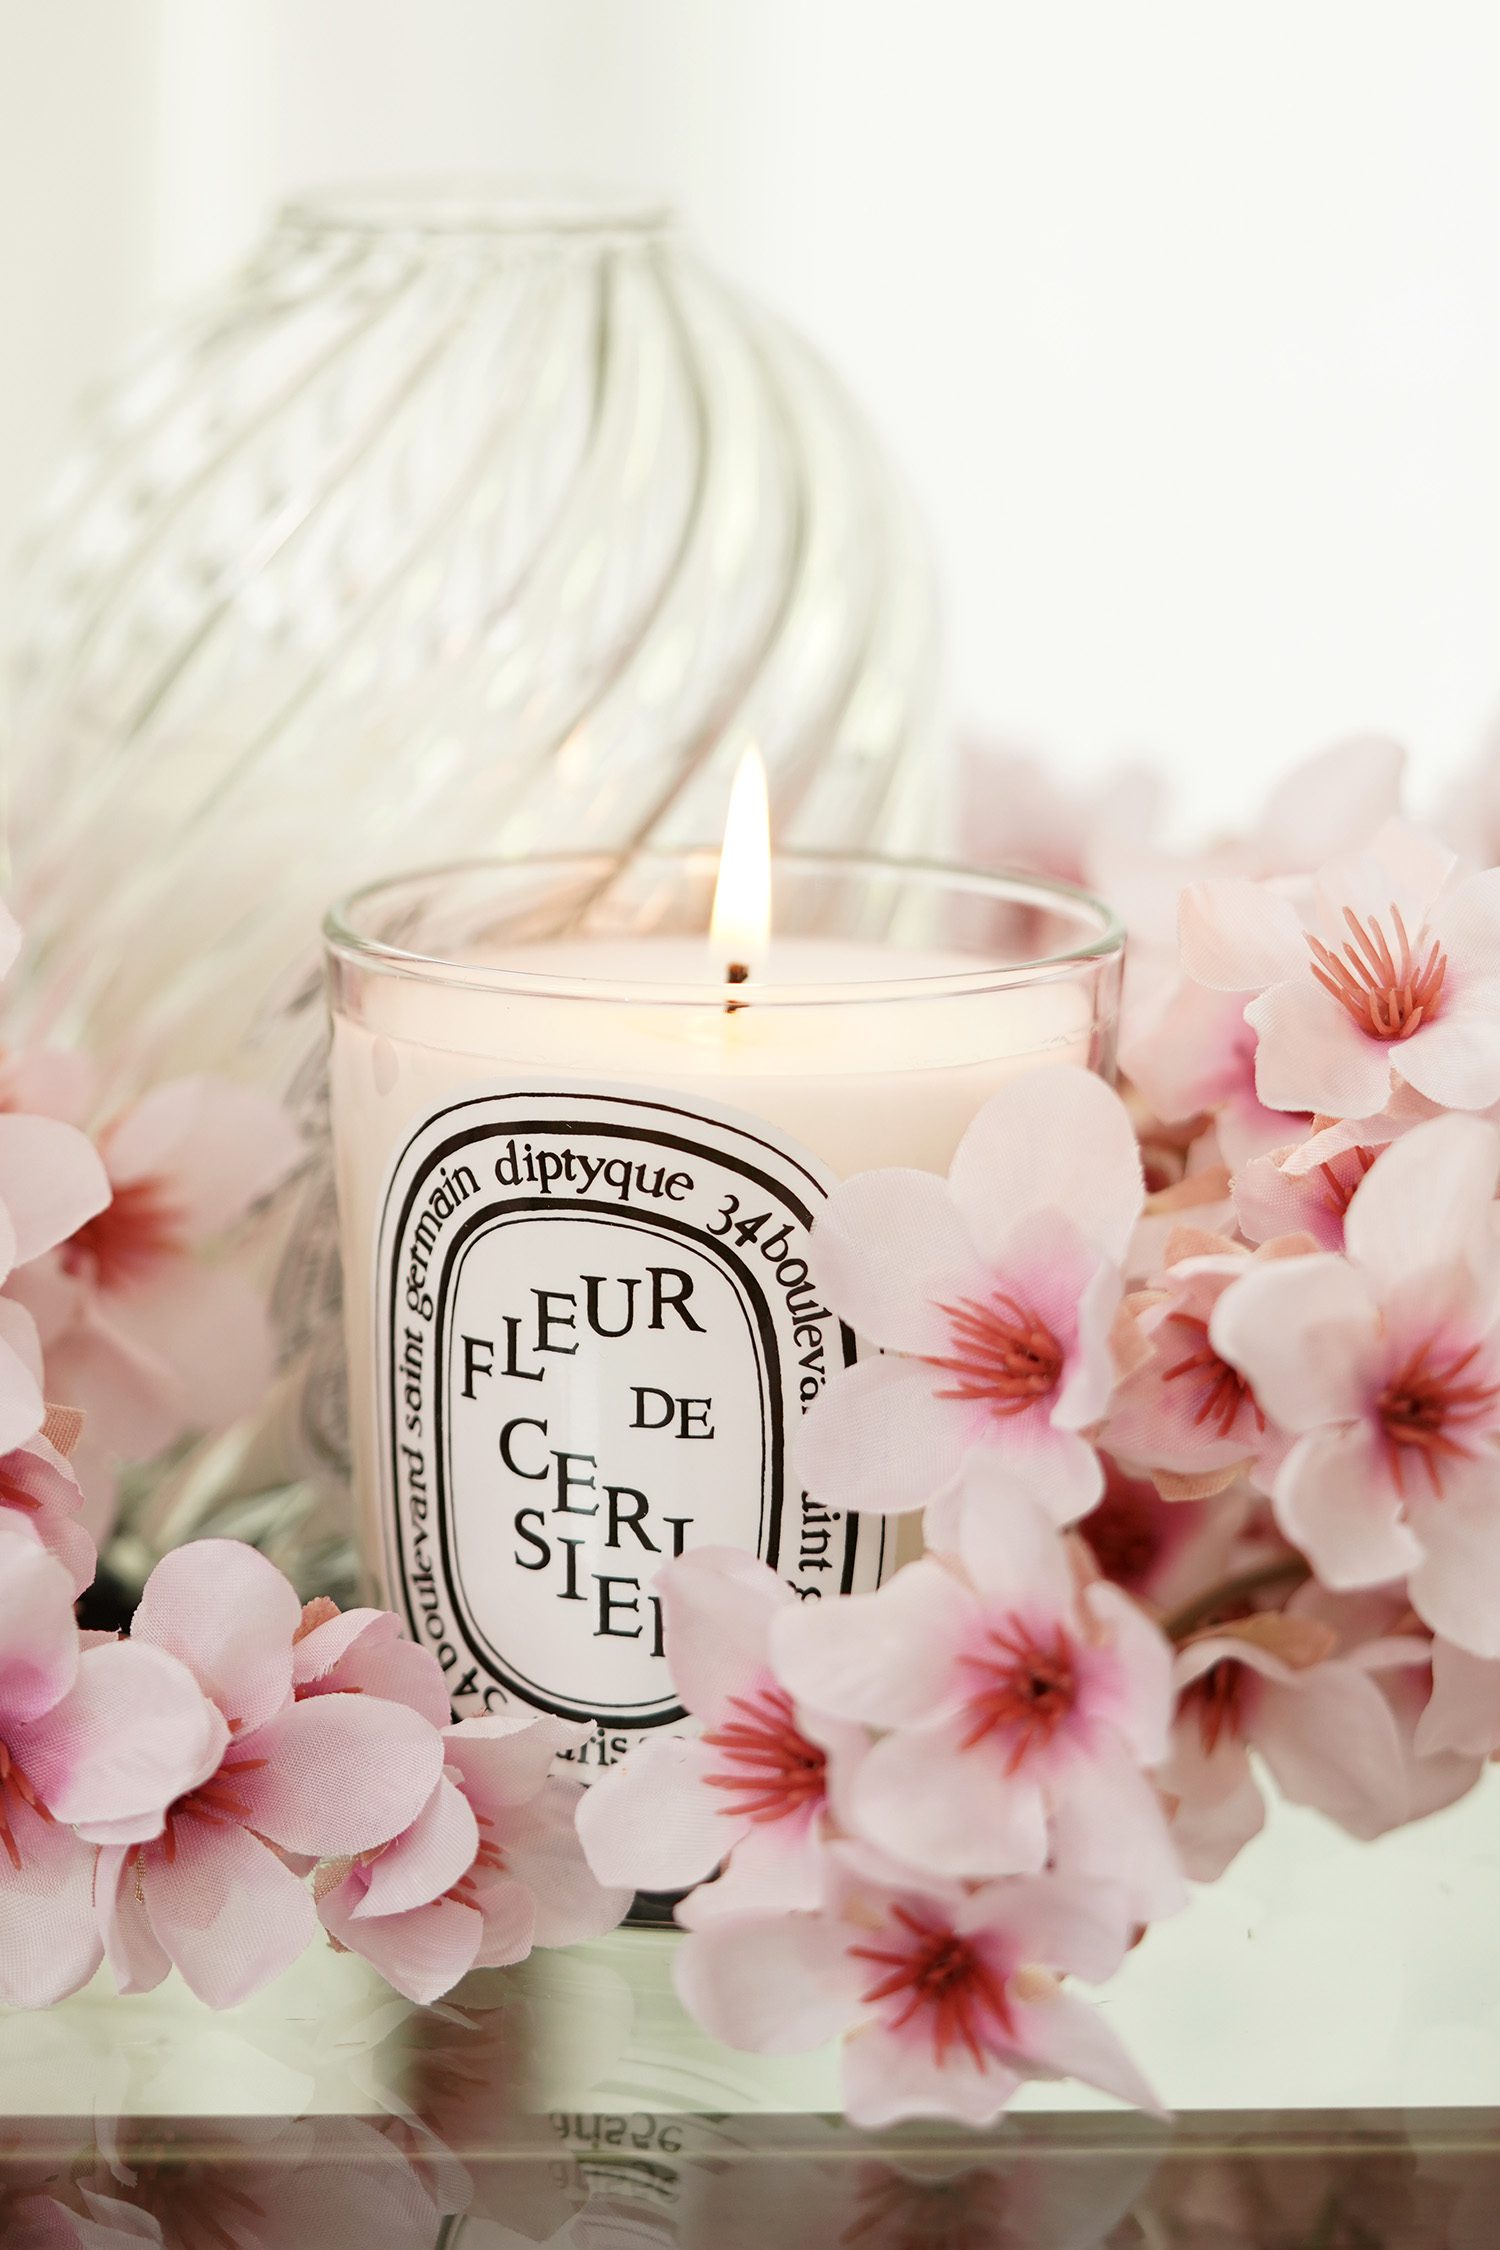 Diptyque Fleur de Cerisier / Cherry Blossom Candle - The Beauty 